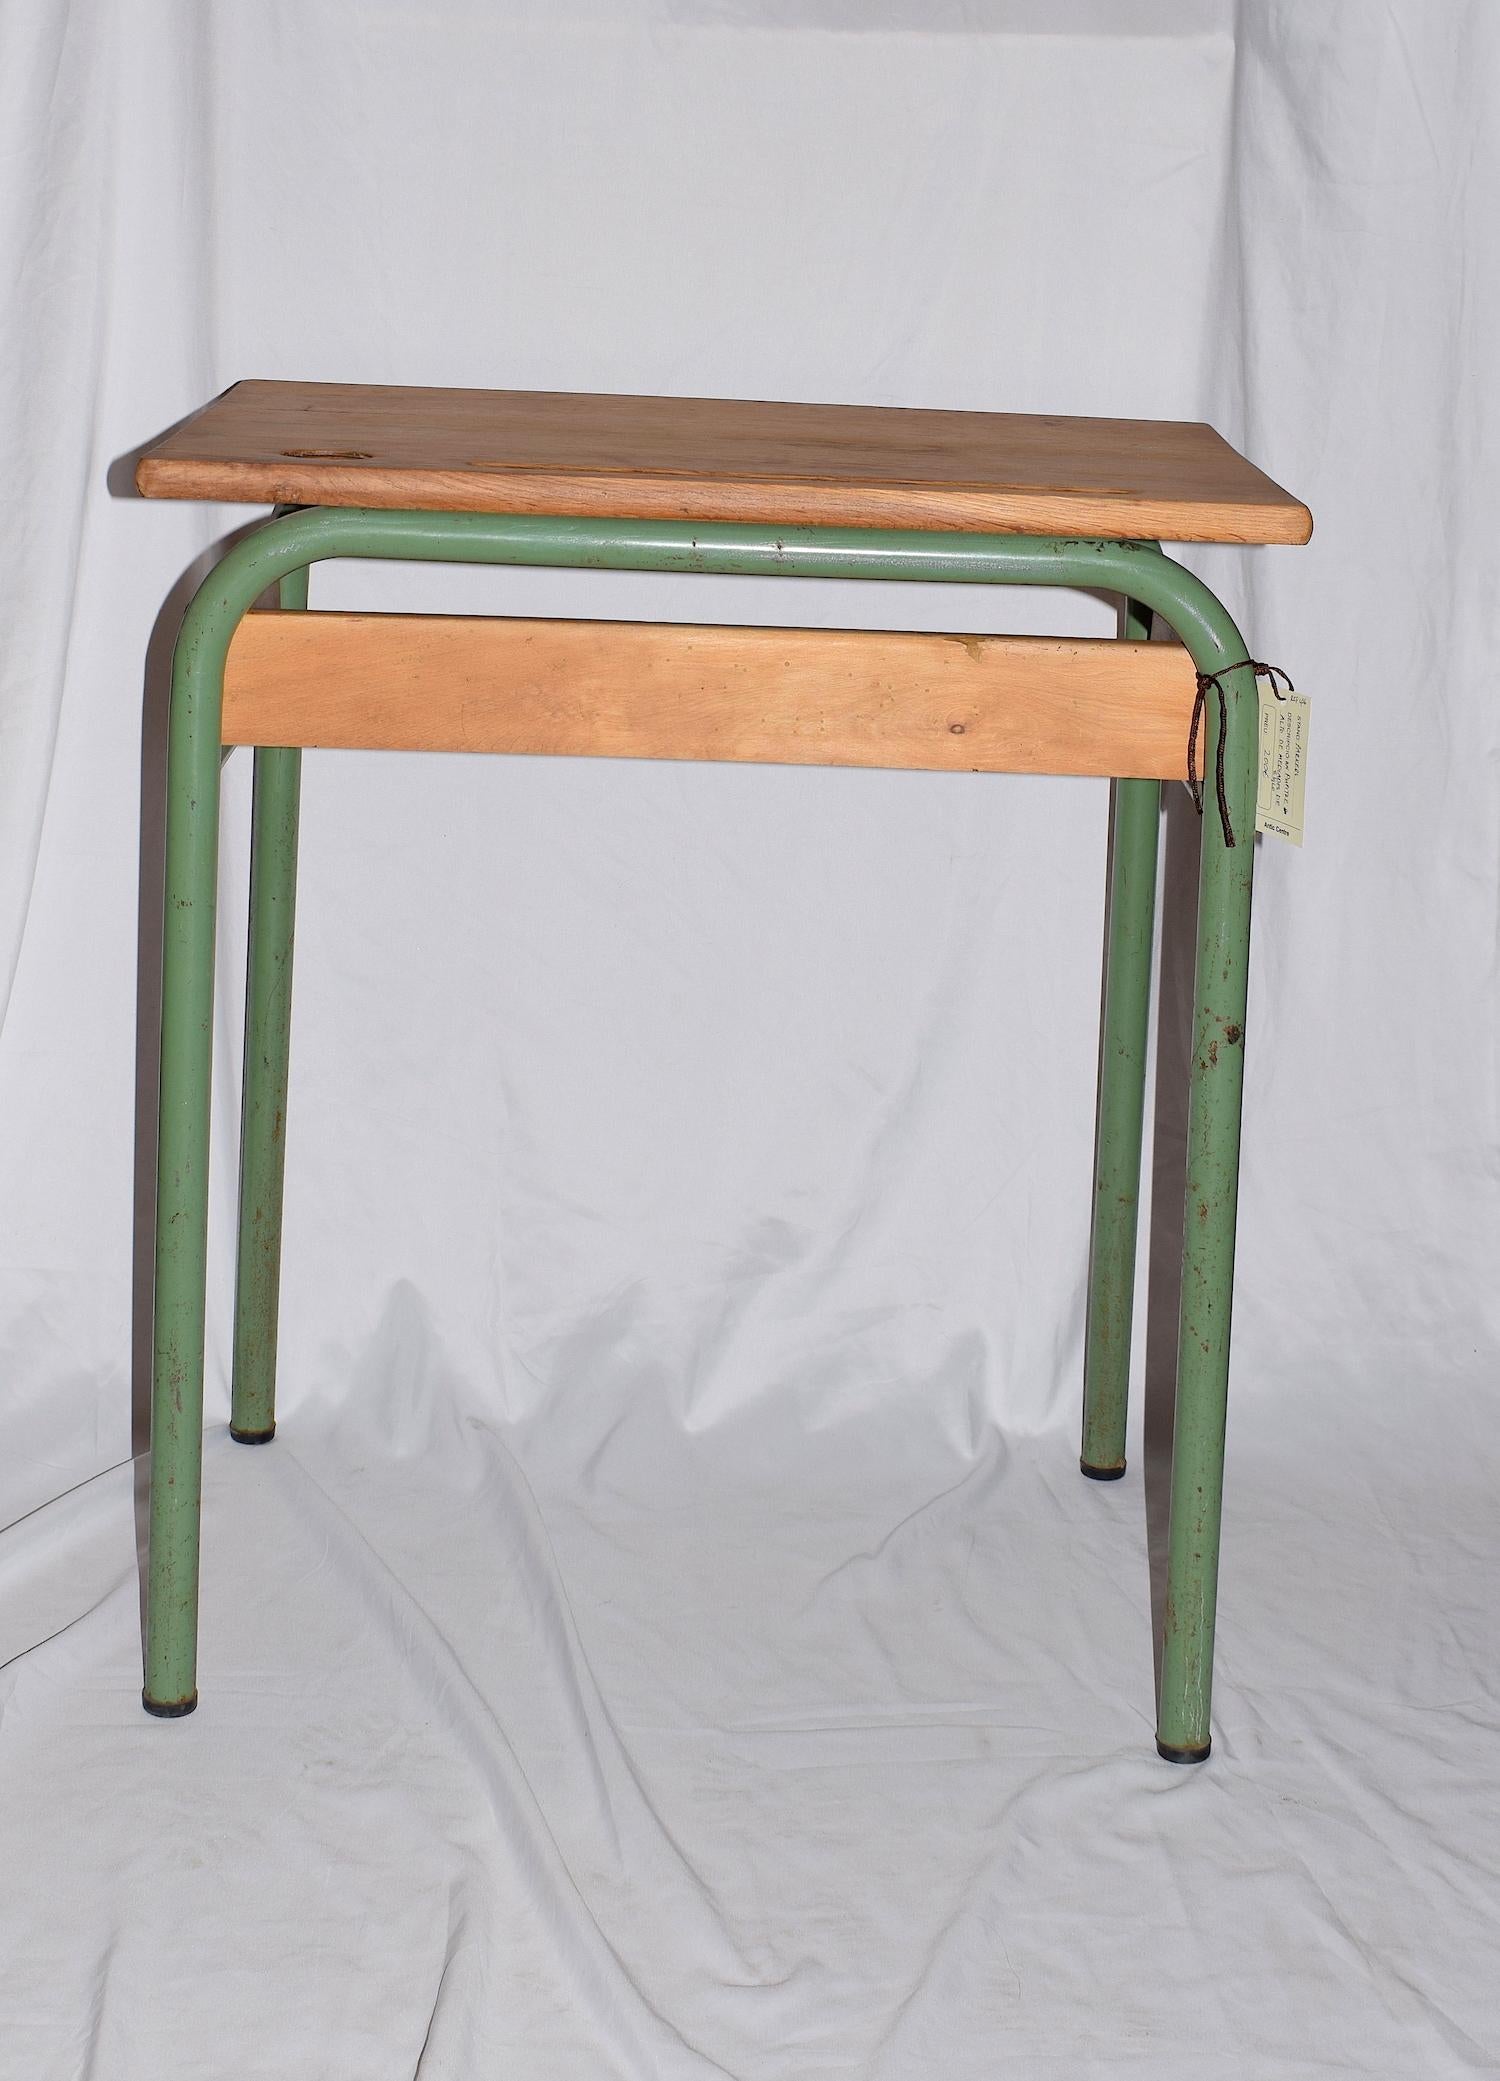 Mid-Century Tubular Metal and Wooden Top School Desk, Industrial in Design 1